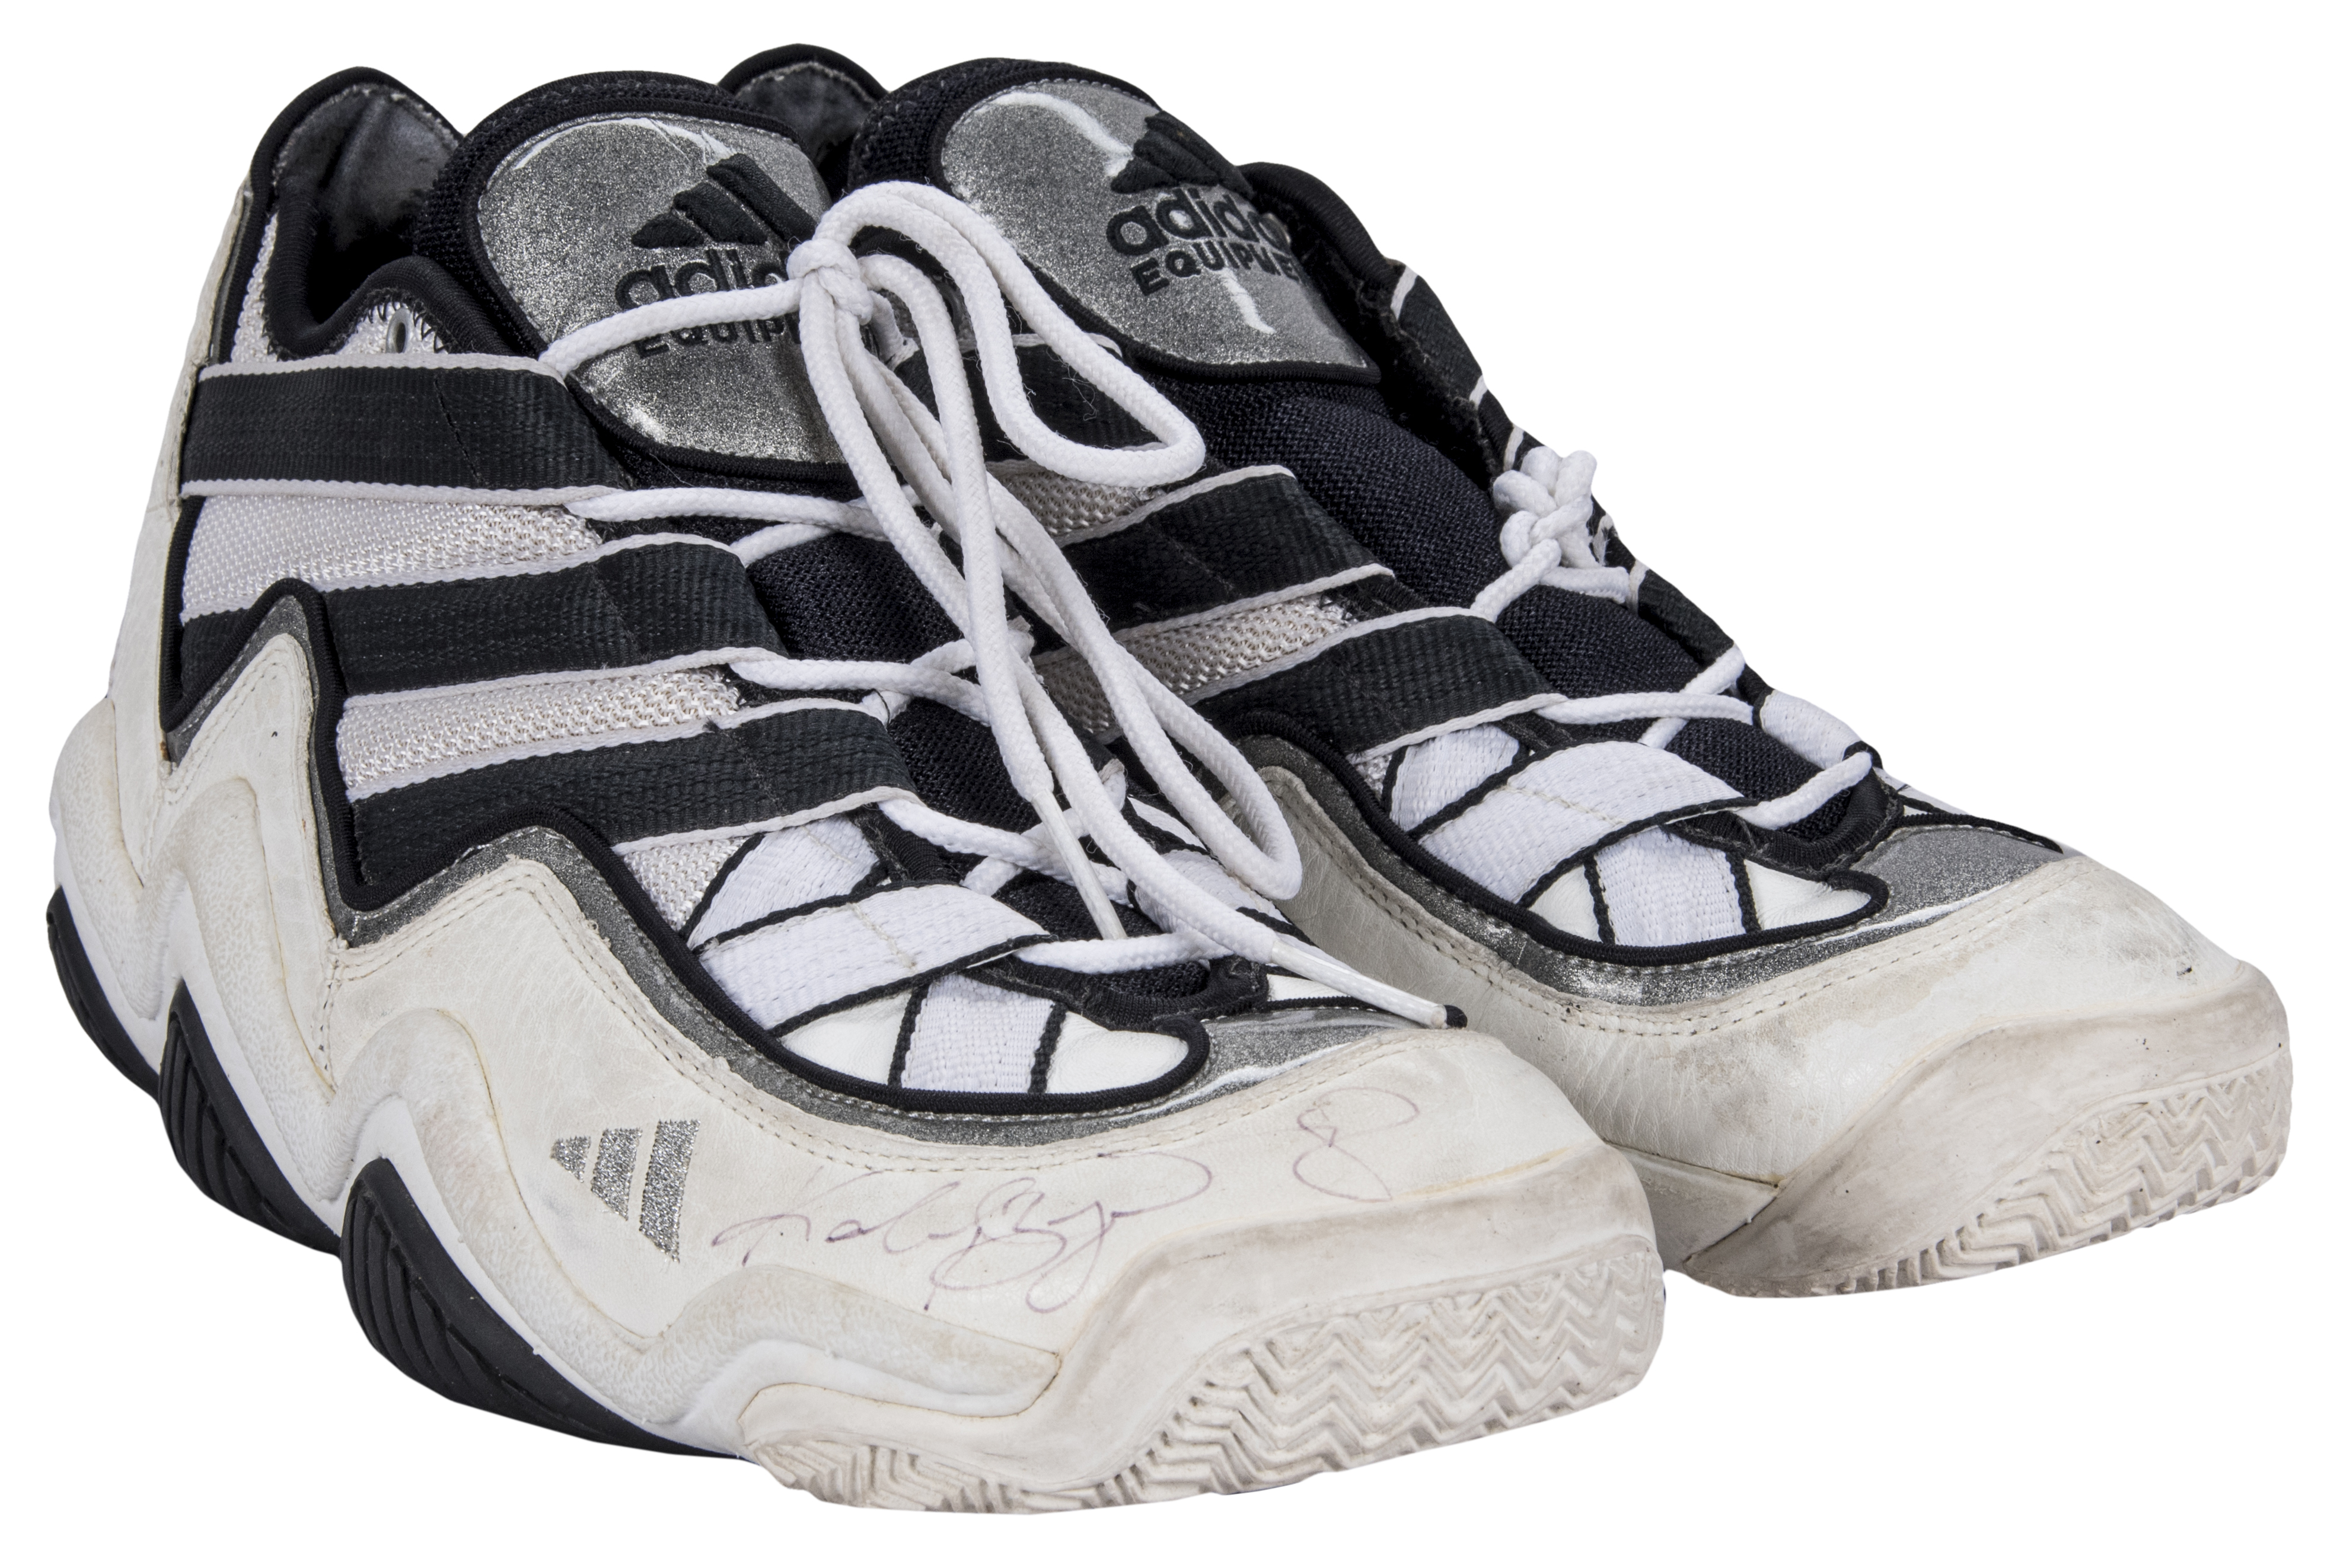 kobe bryant adidas shoes 1996